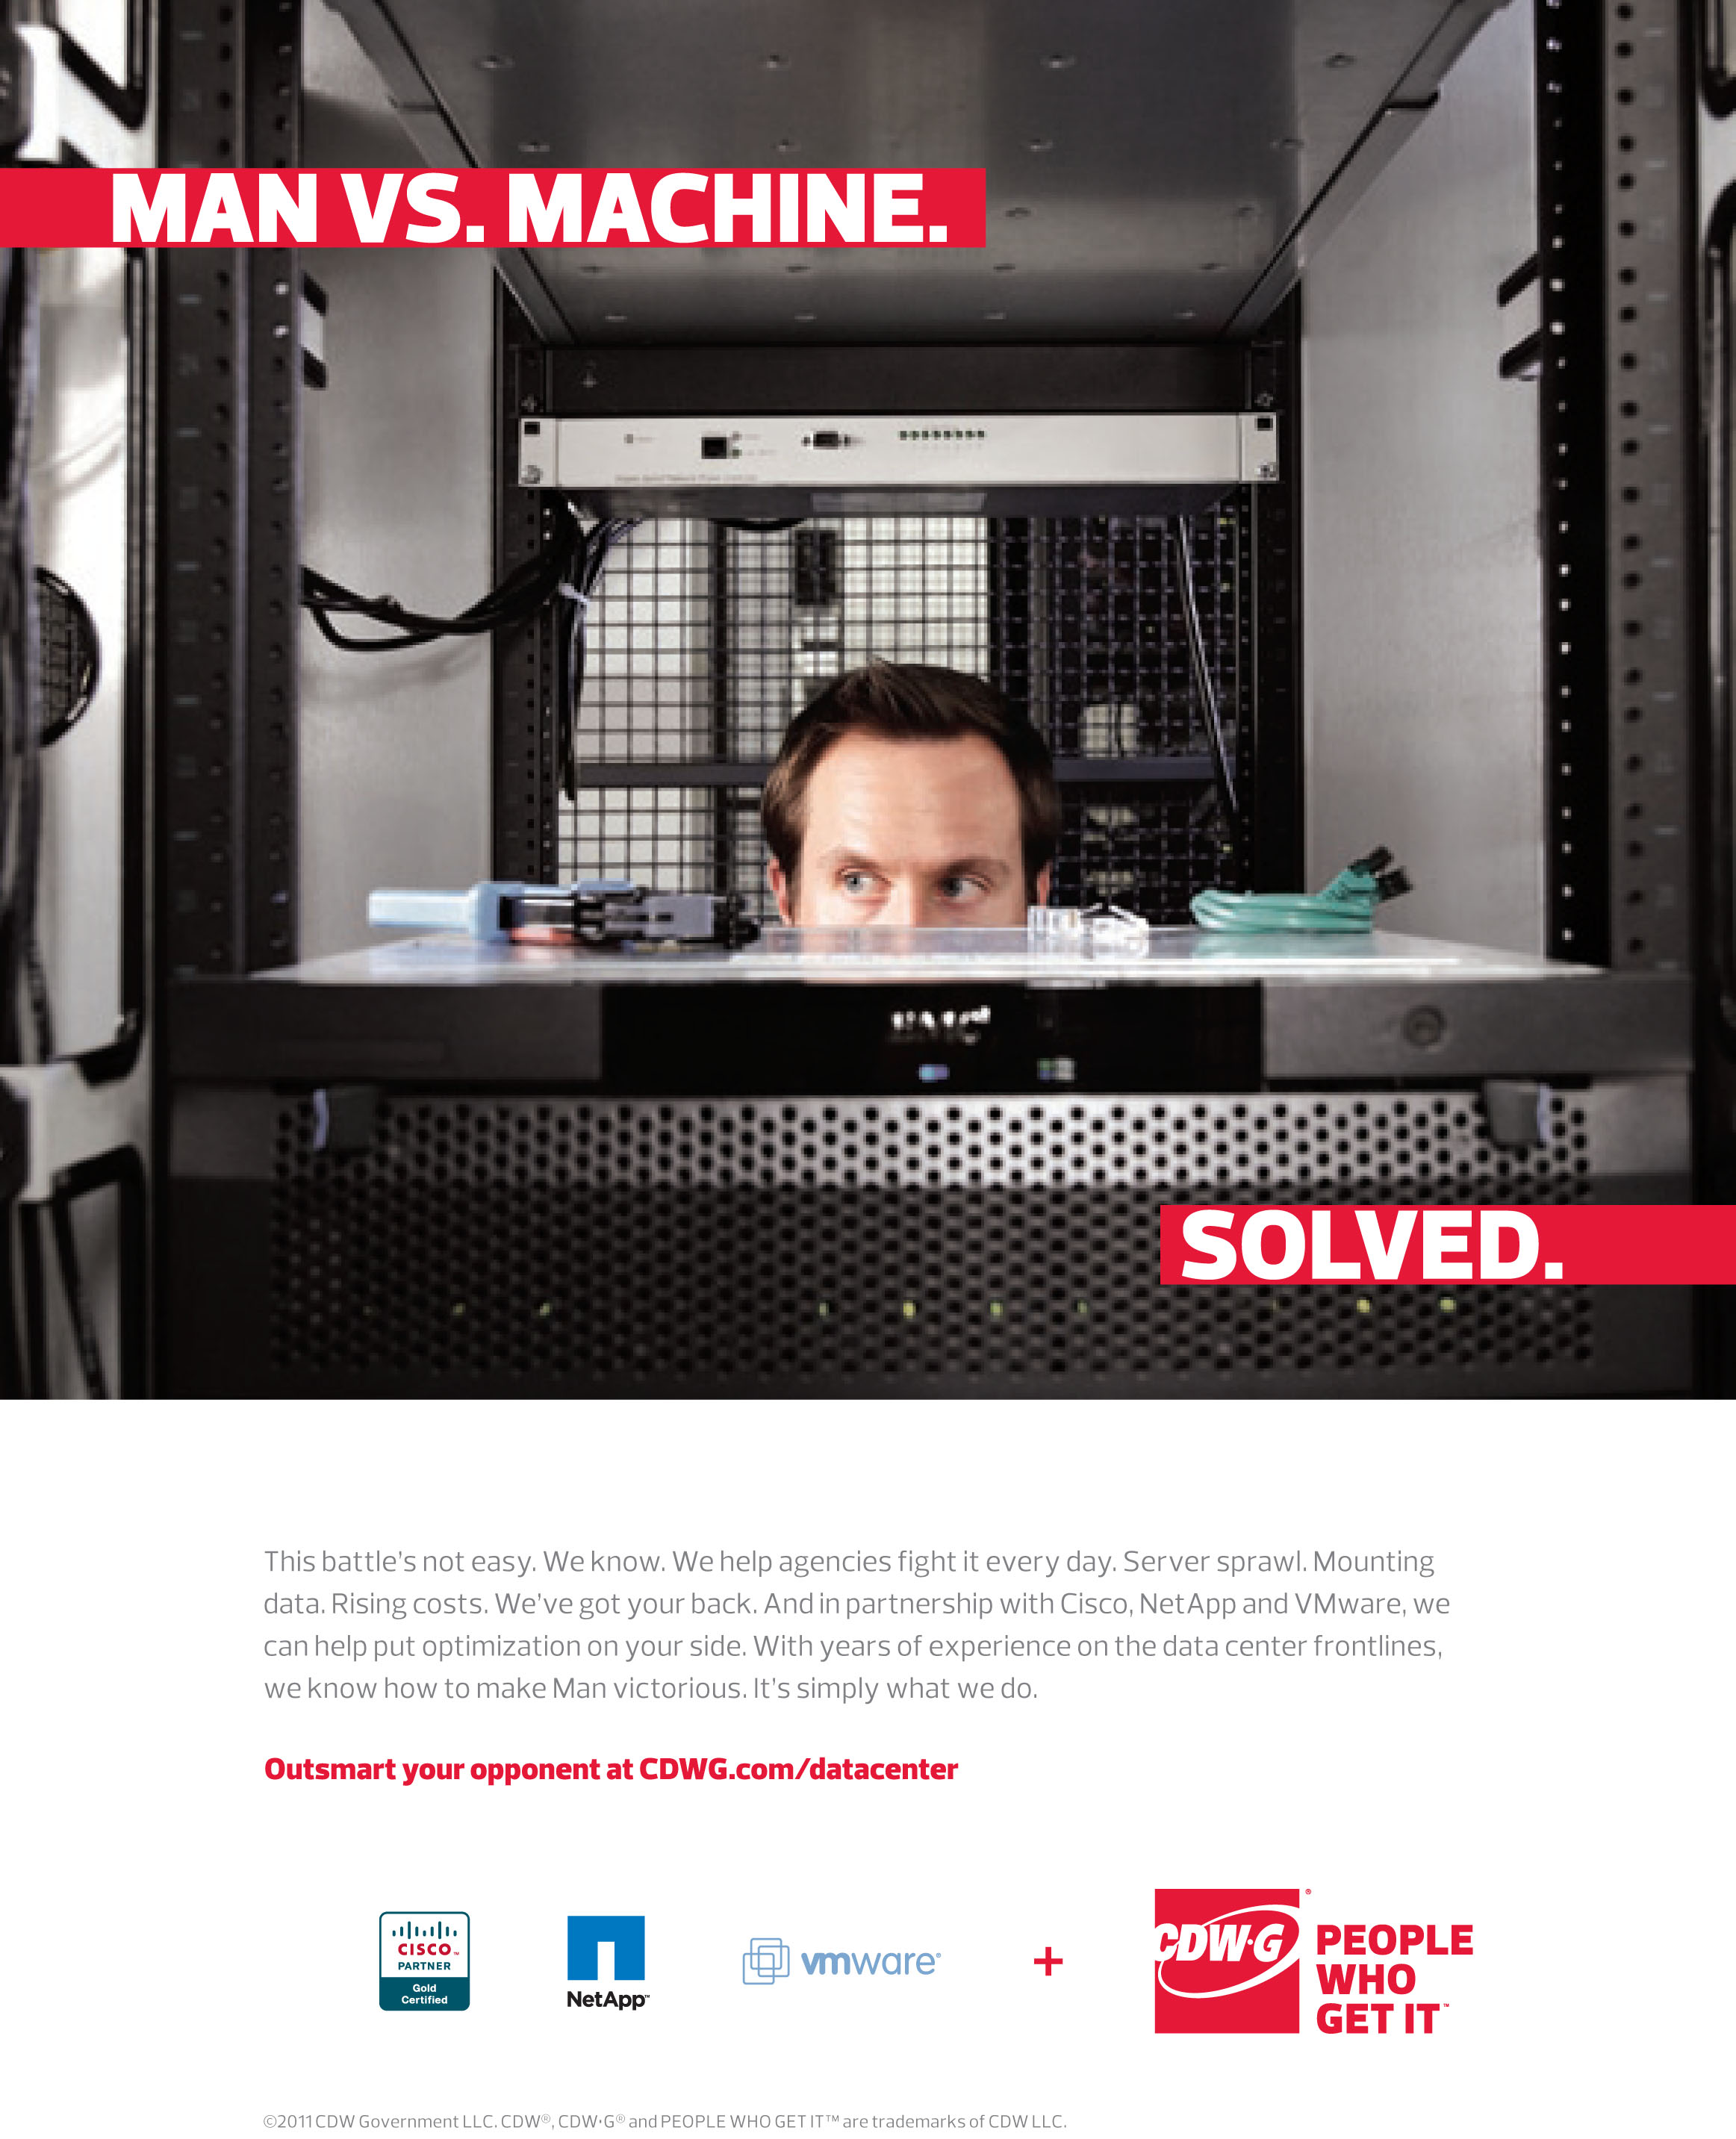 CDW_Print_Man vs Machine.jpg